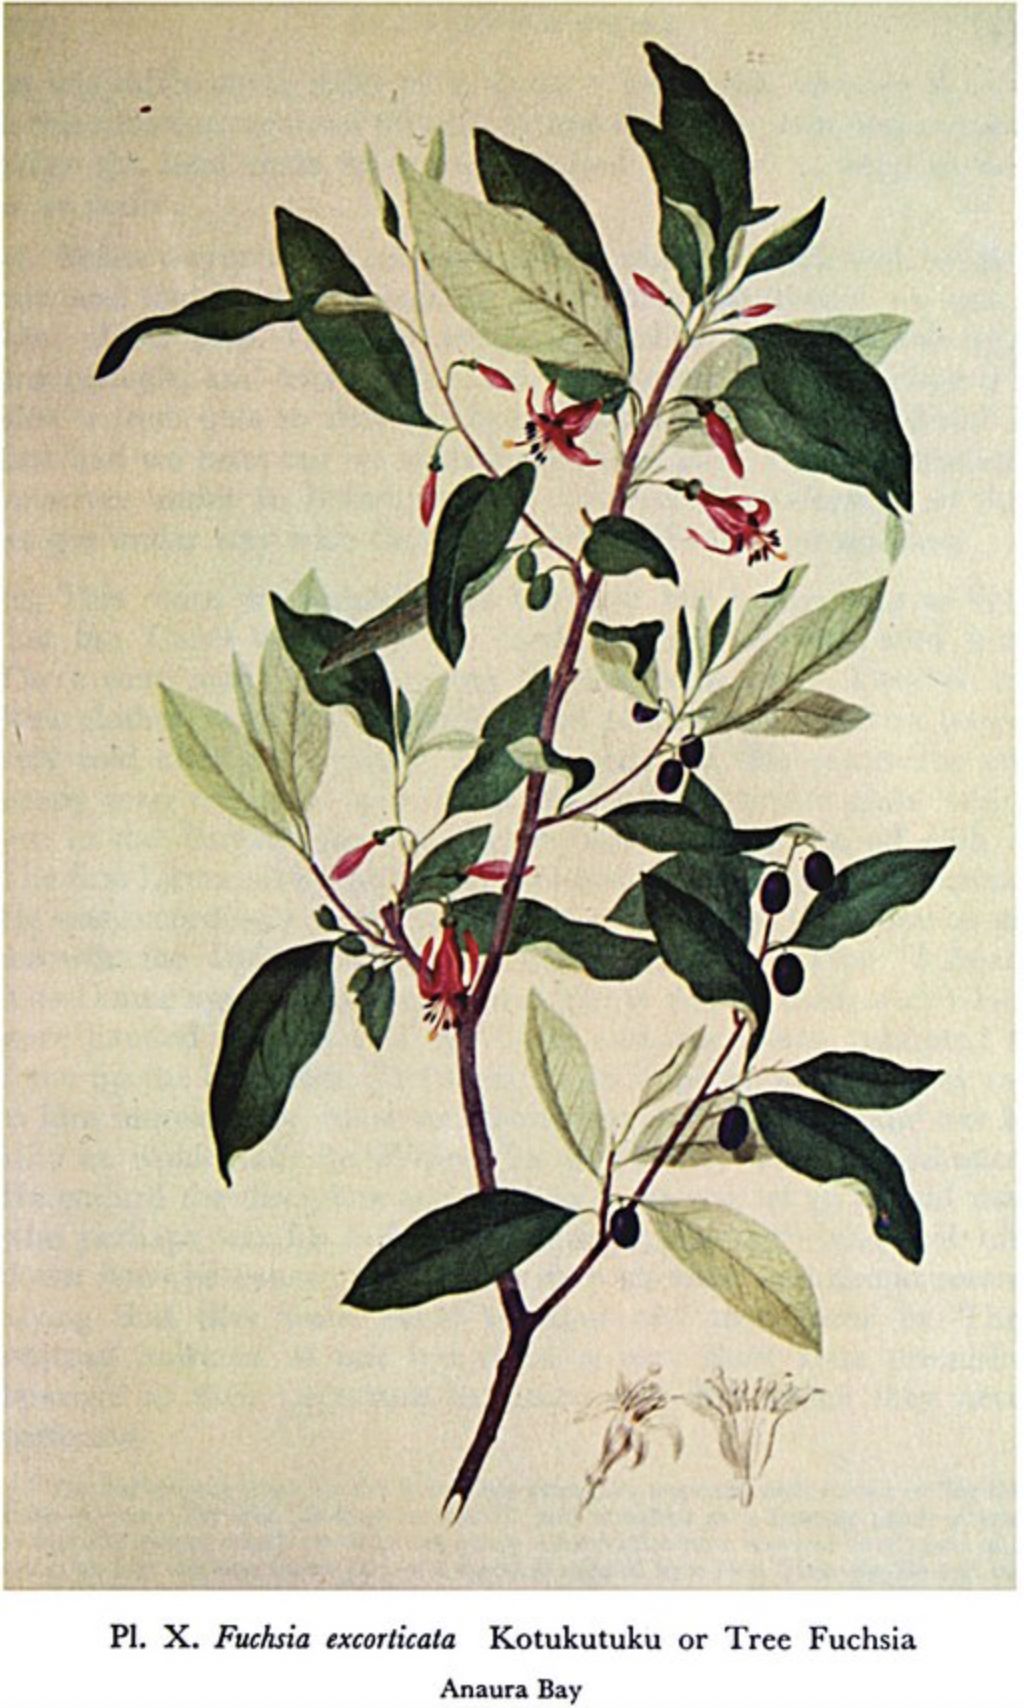 Parkinson, Tree Fuchsia